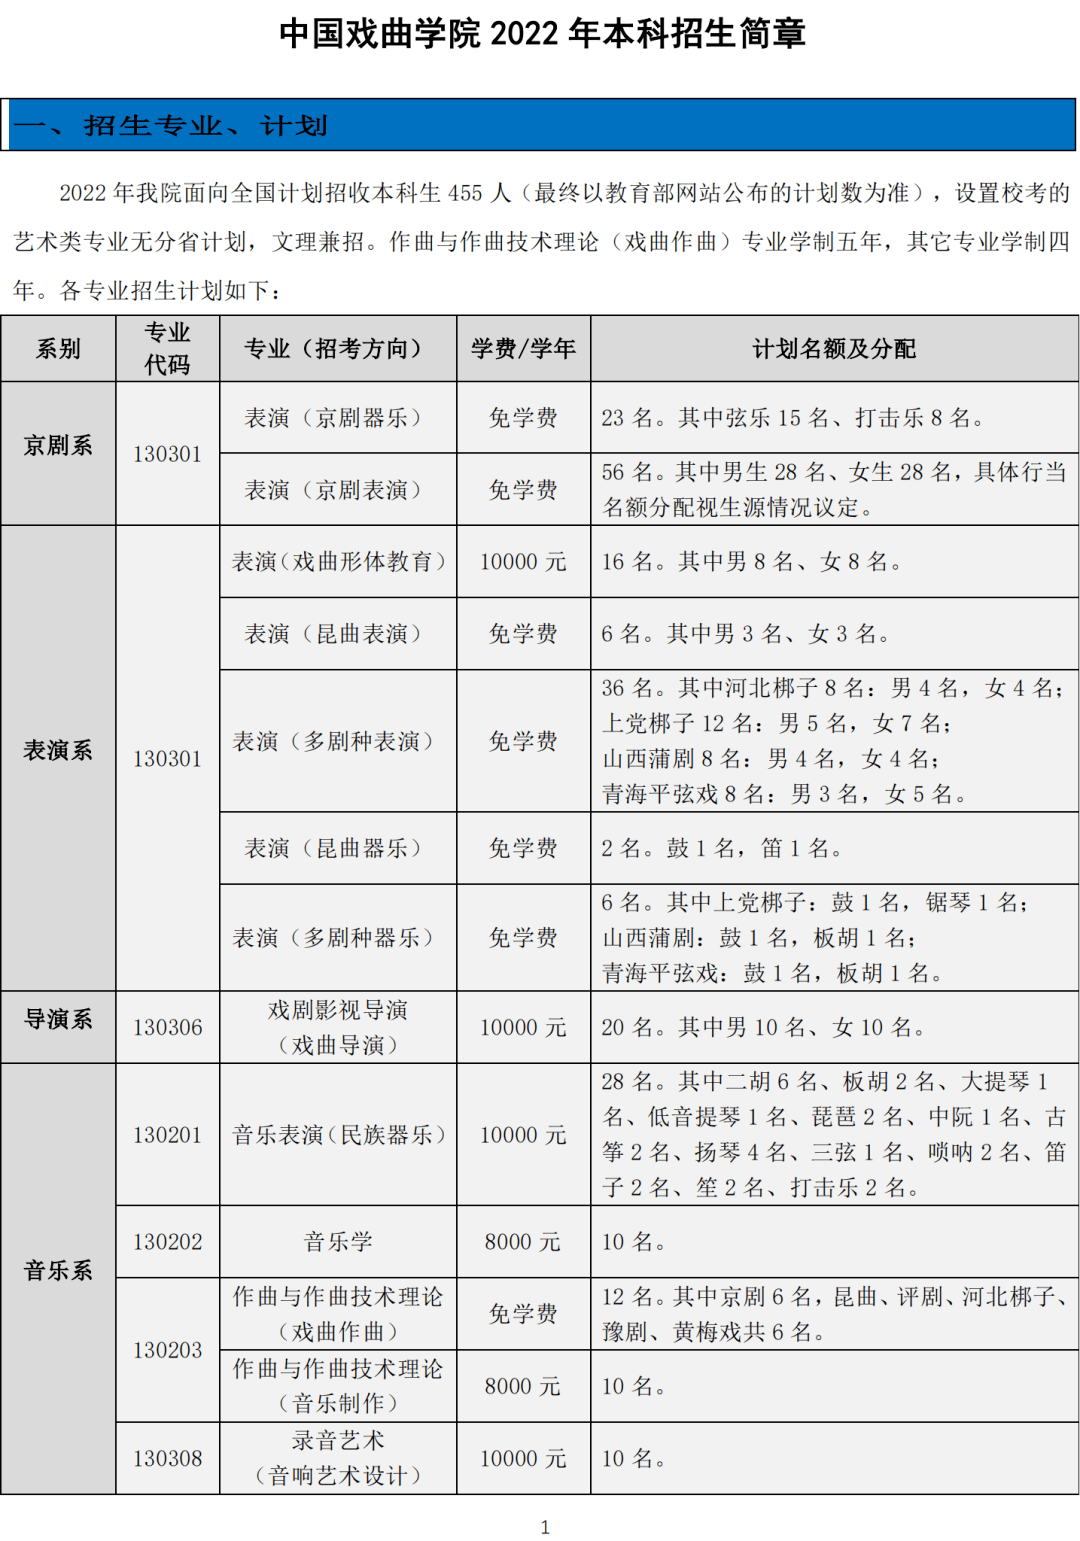 中国戏曲学院1月14日在京宣布,2022年,学院计划招收本科生455人,其中